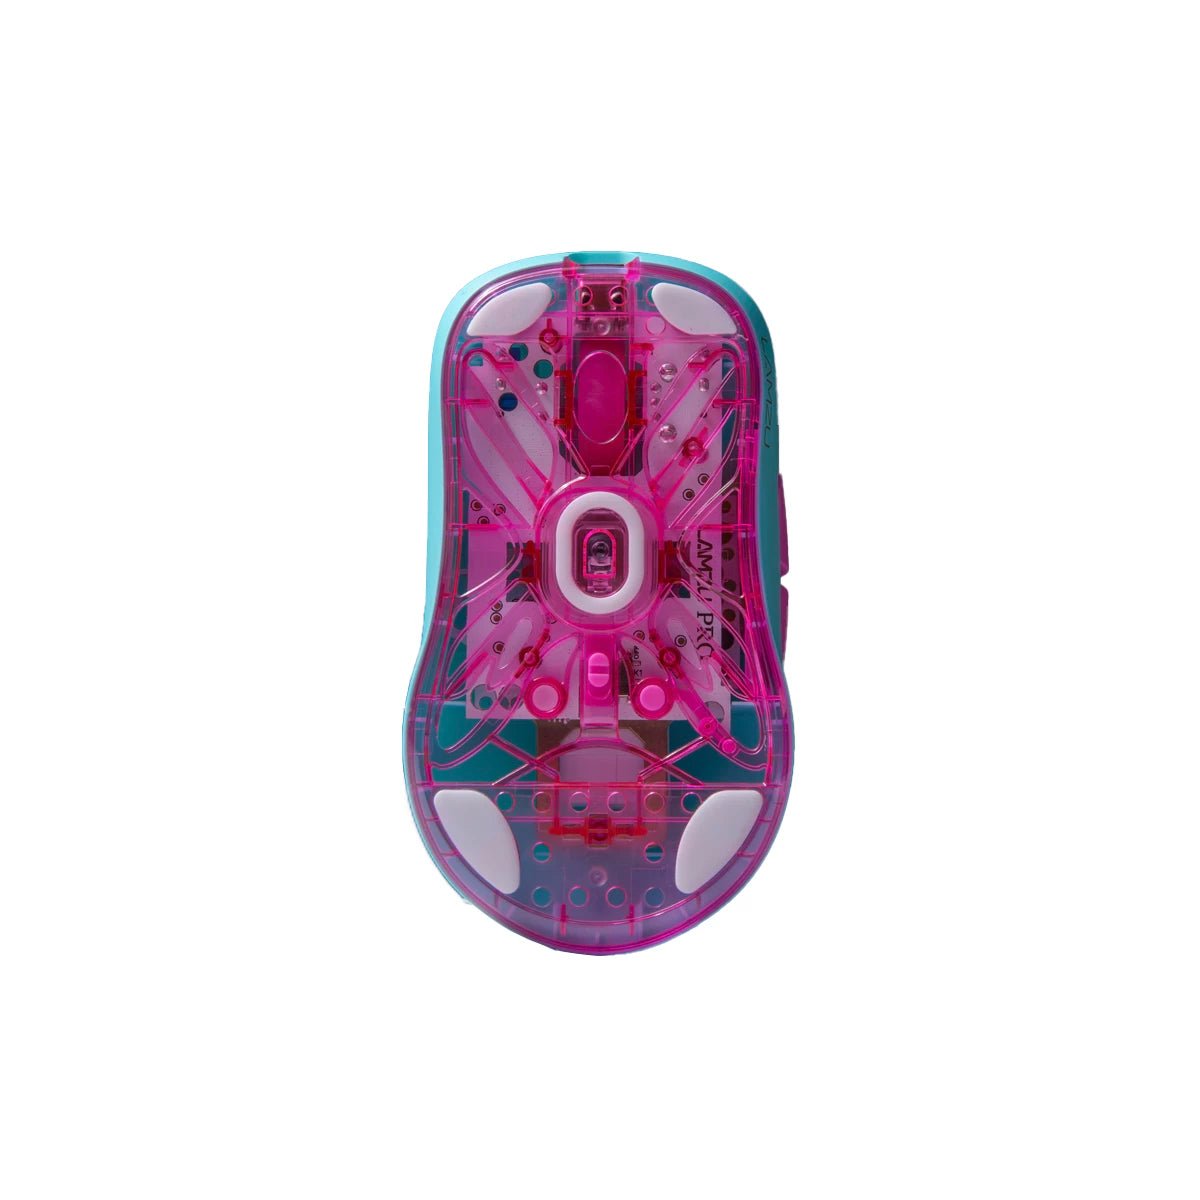 Lamzu Atlantis Mini Pro Superlight Gaming Mouse - Divinikey